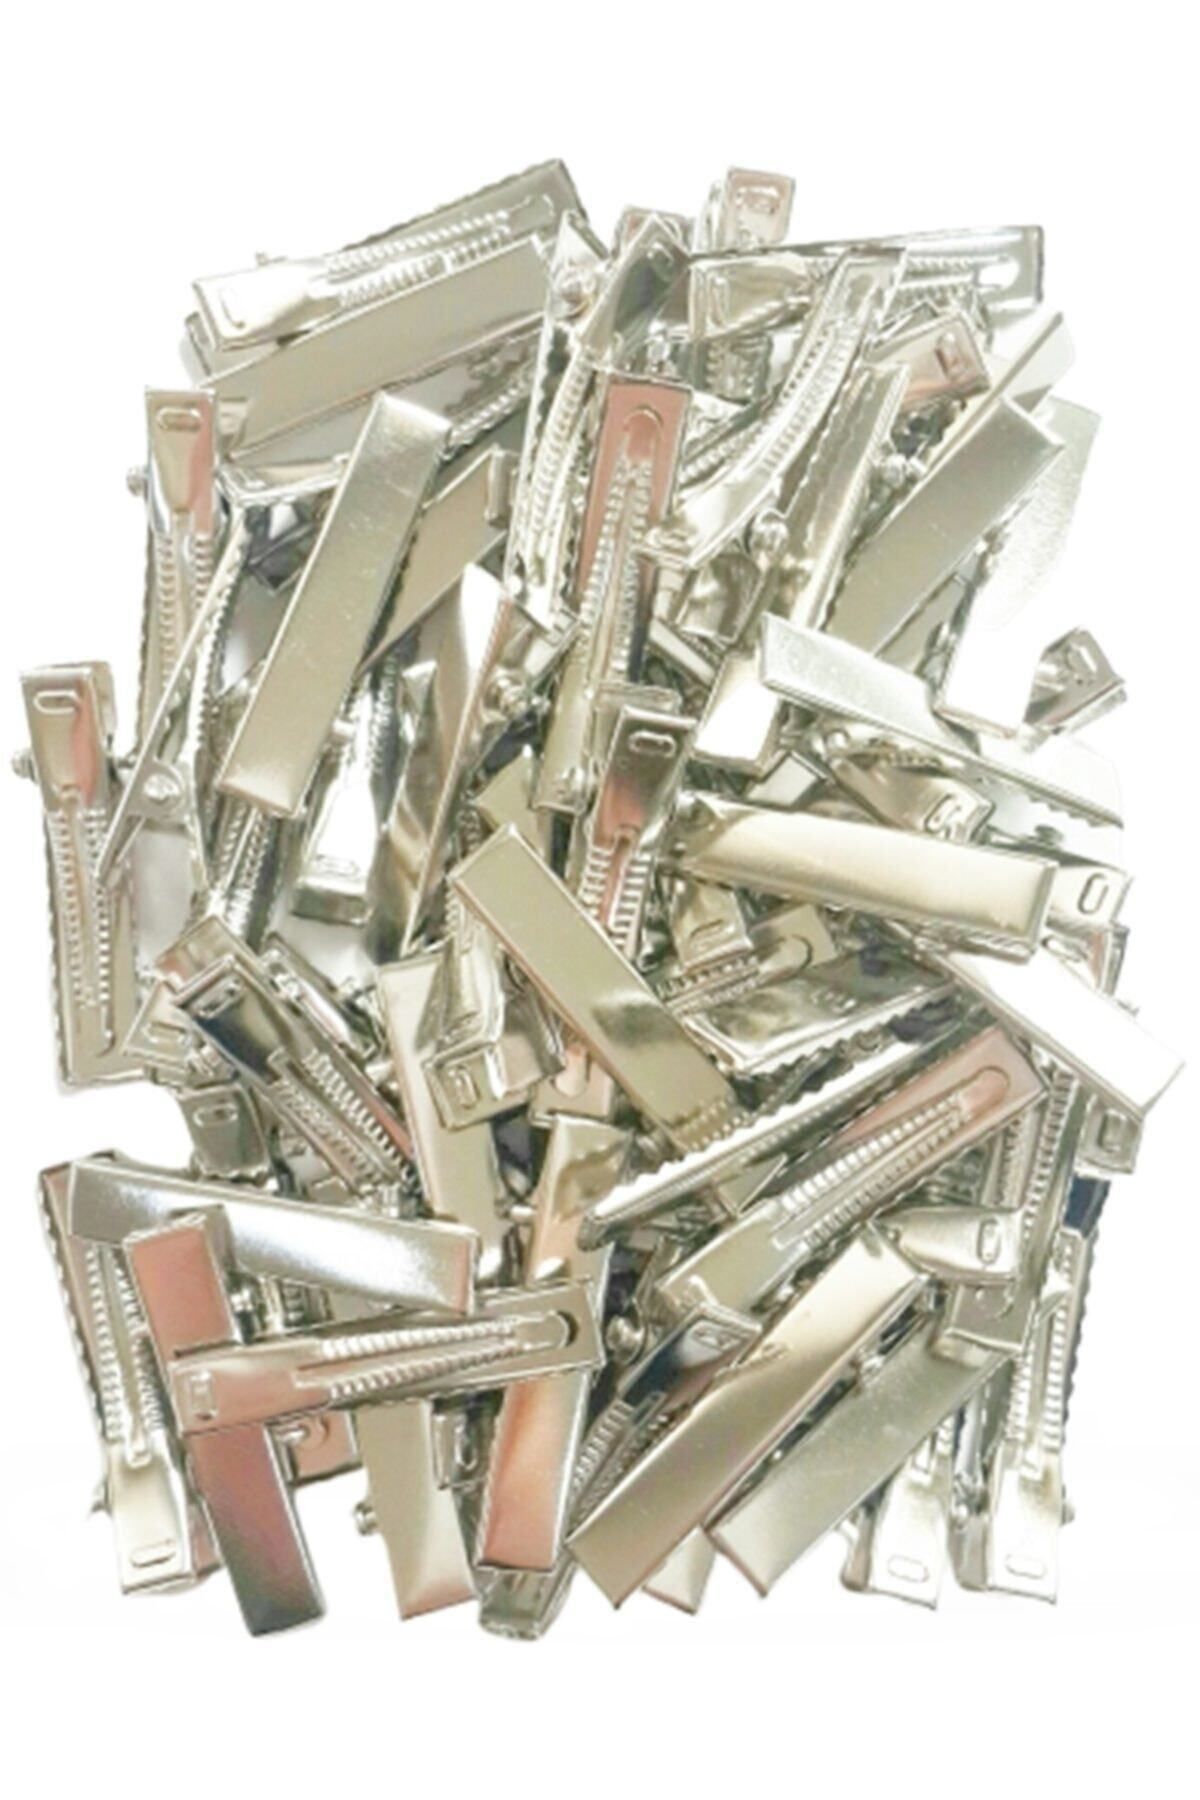 ByOzras Metal Pens Toka - Timsah Toka 50 Li Paket 4.5 Cm